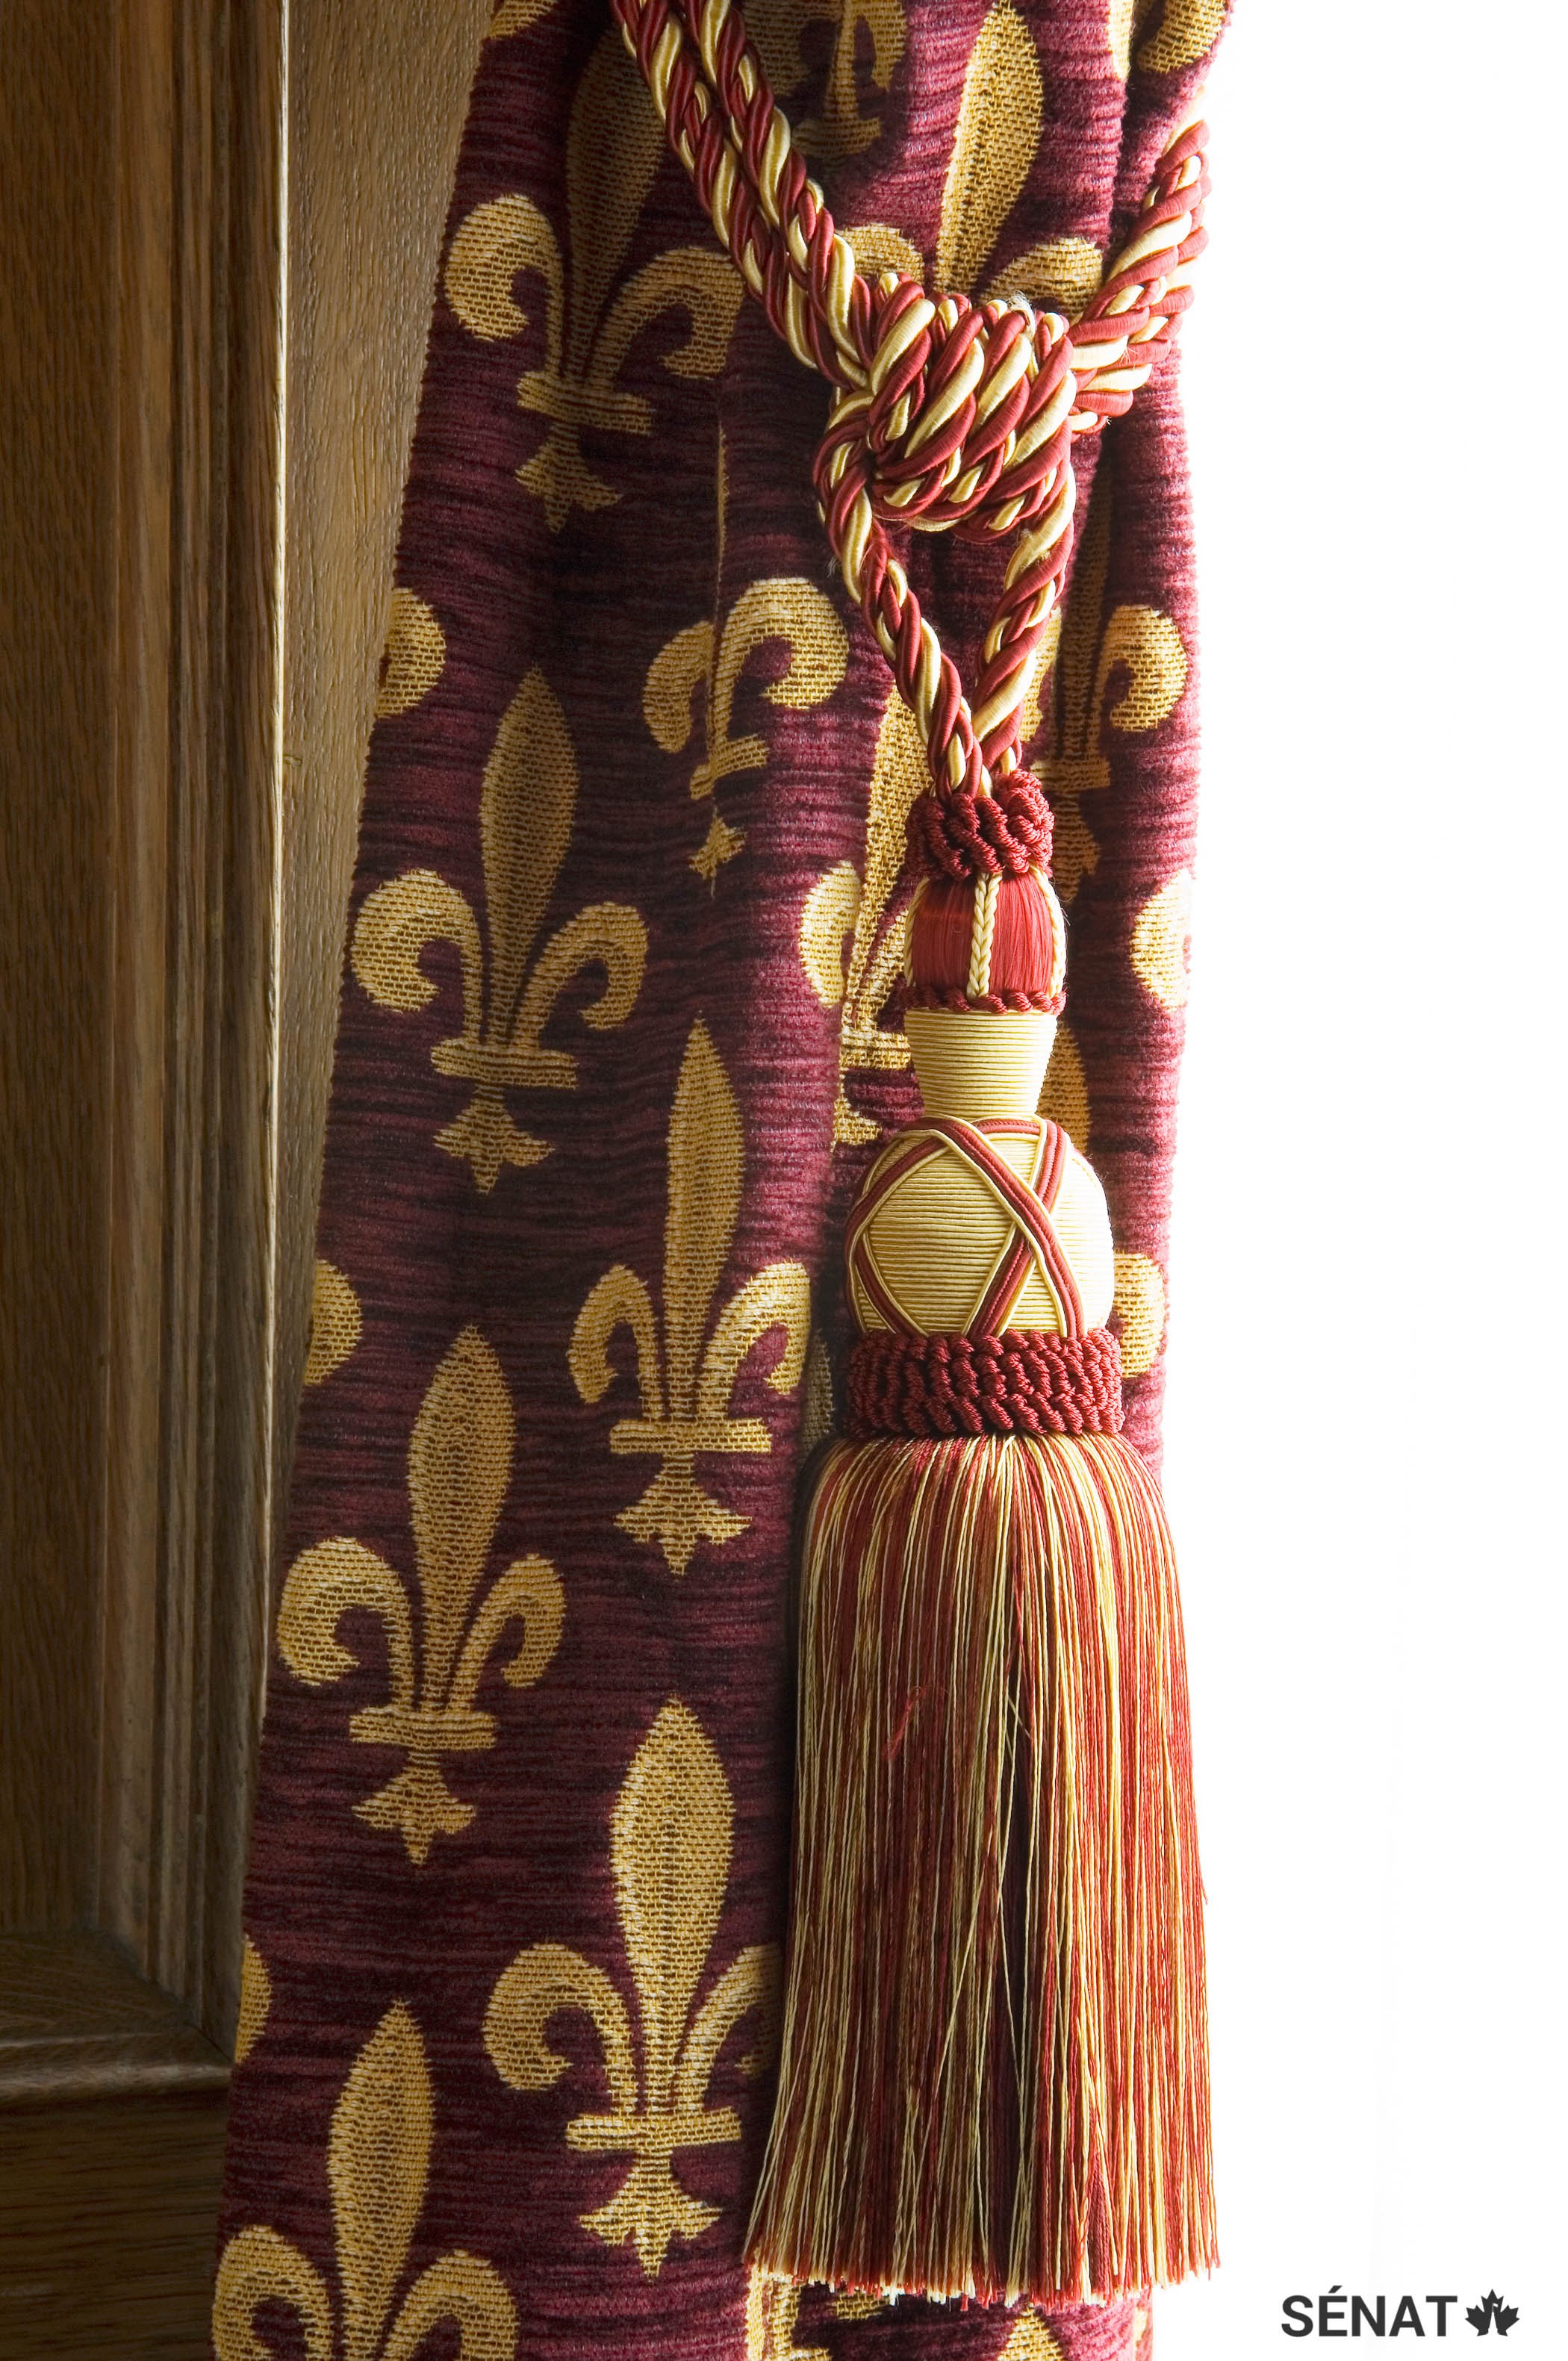 La fleur de lys, symbole de la dynastie française des Bourbons, est à l’honneur dans tout le Salon de la Francophonie.